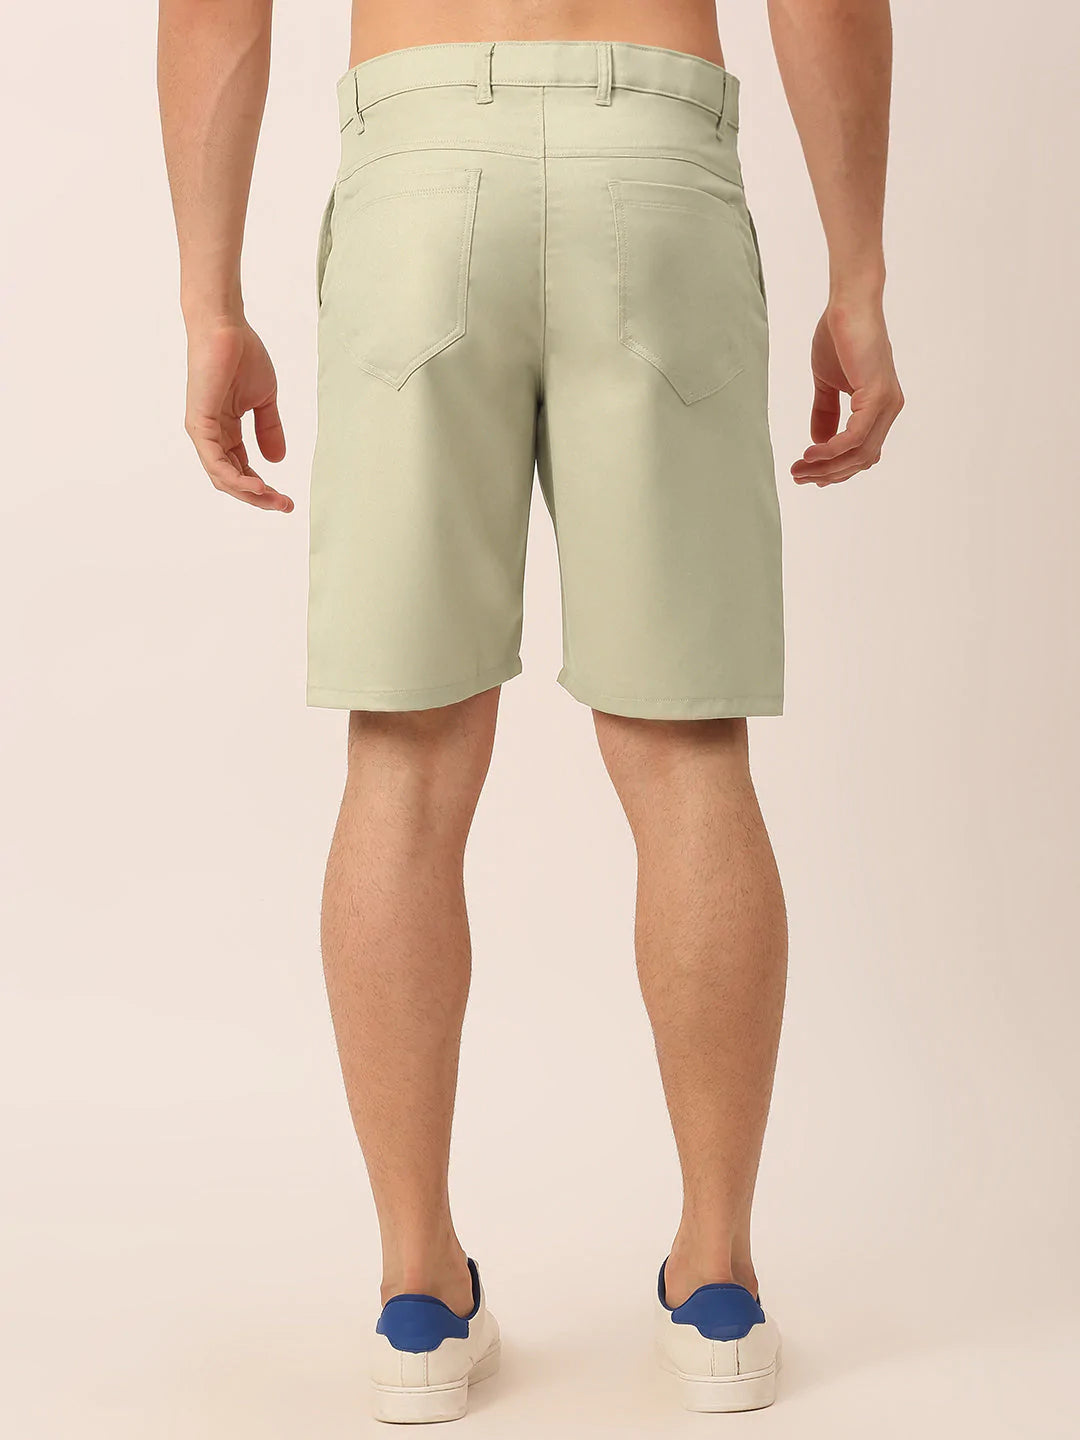 Jainish Men's Casual Cotton Solid Shorts ( SGP 153 Cream )